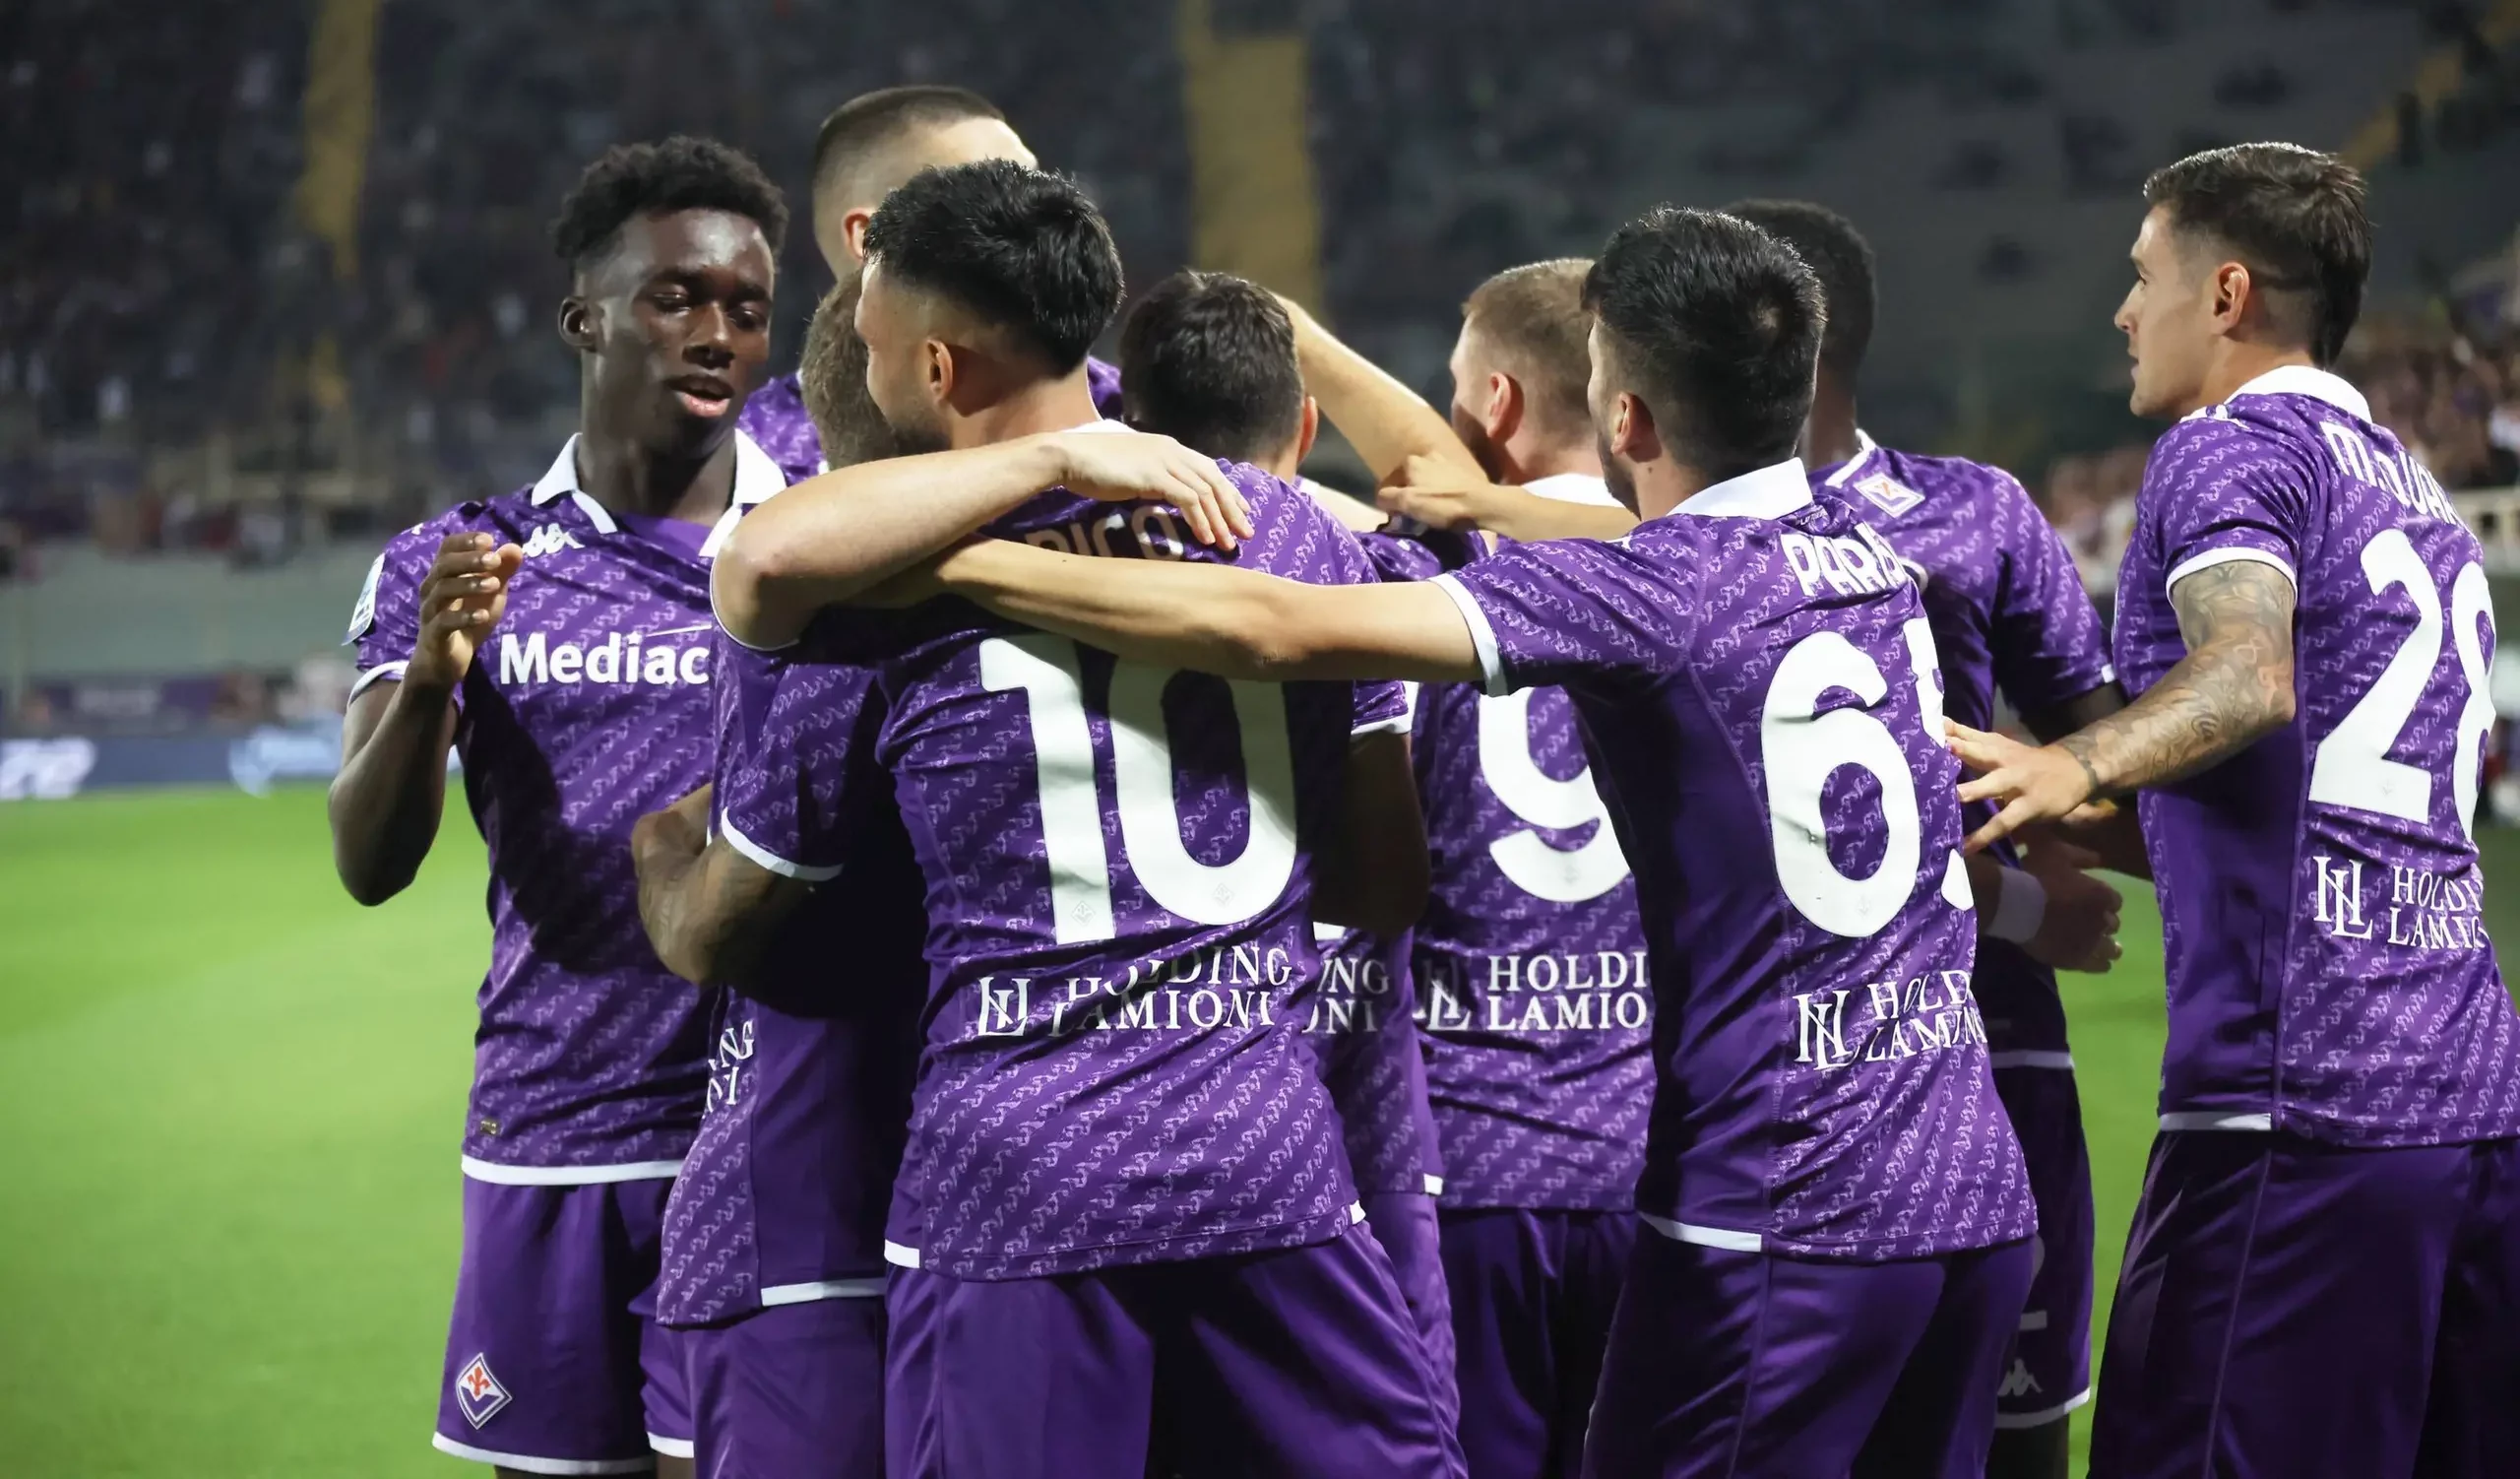 Fiorentina, tripletta contro il Cagliari e vola al terzo posto: le pagelle